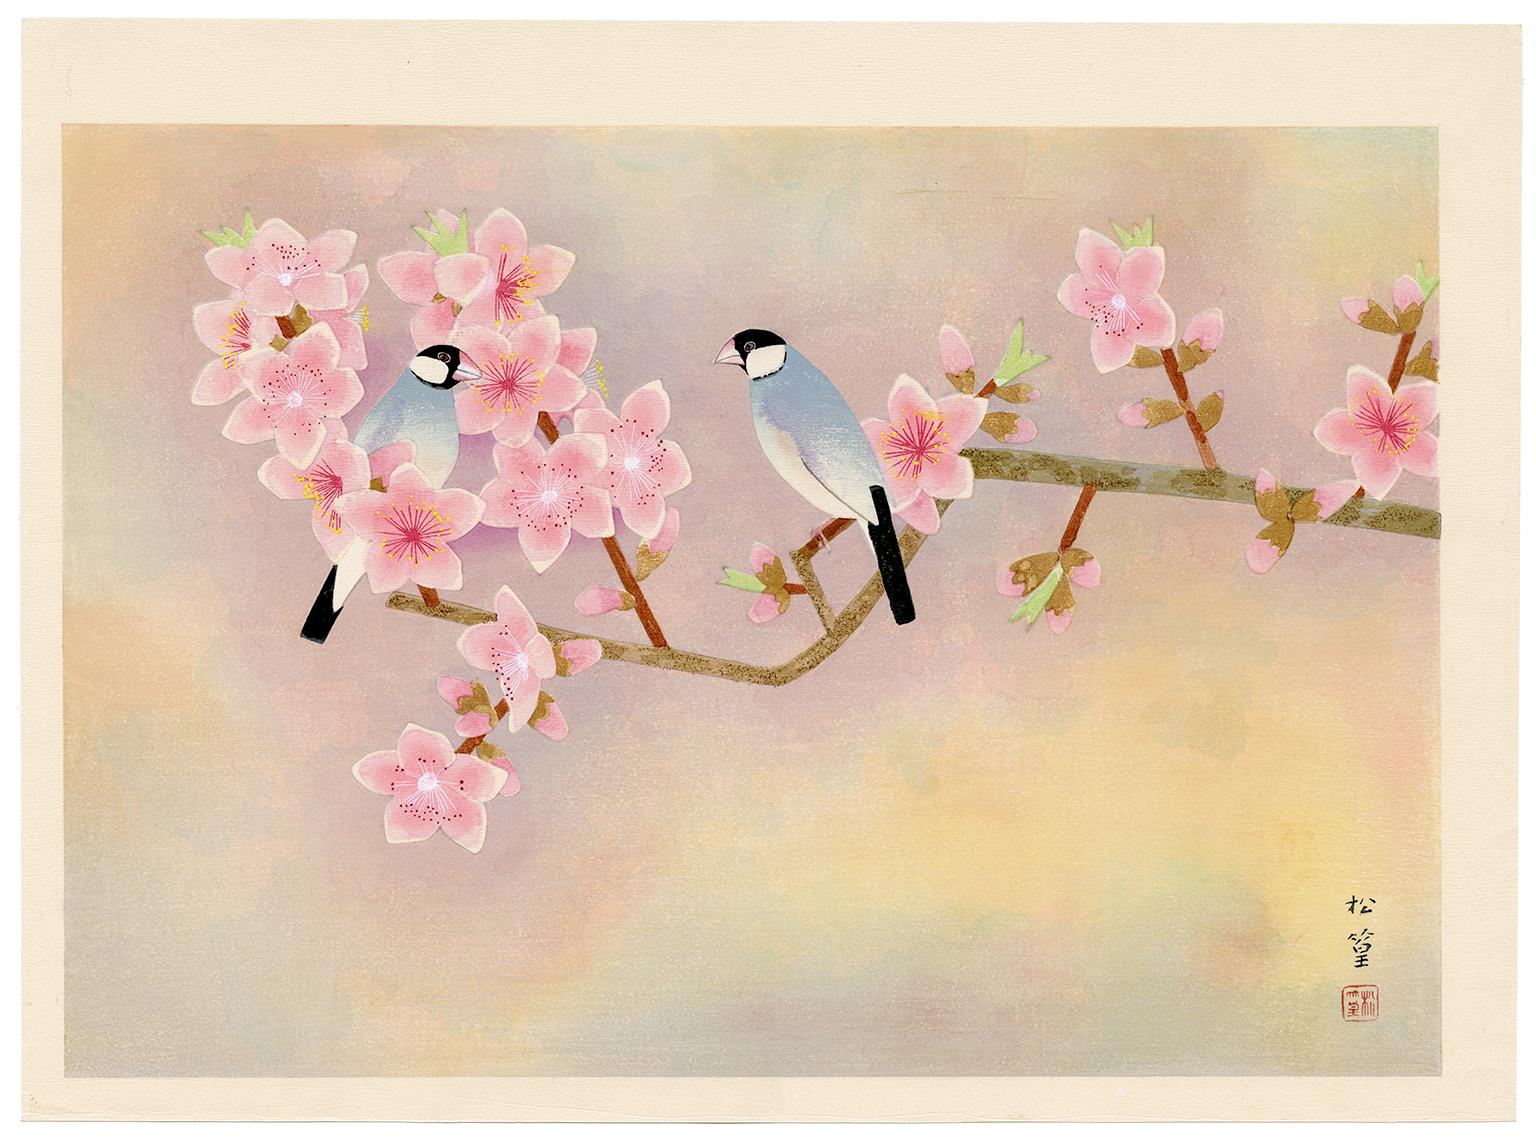 Animal Print Shoko Uemura - À l'intérieur des fleurs (moineau de Java et fleurs de pêcher) - Gravure sur bois japonaise, 1950